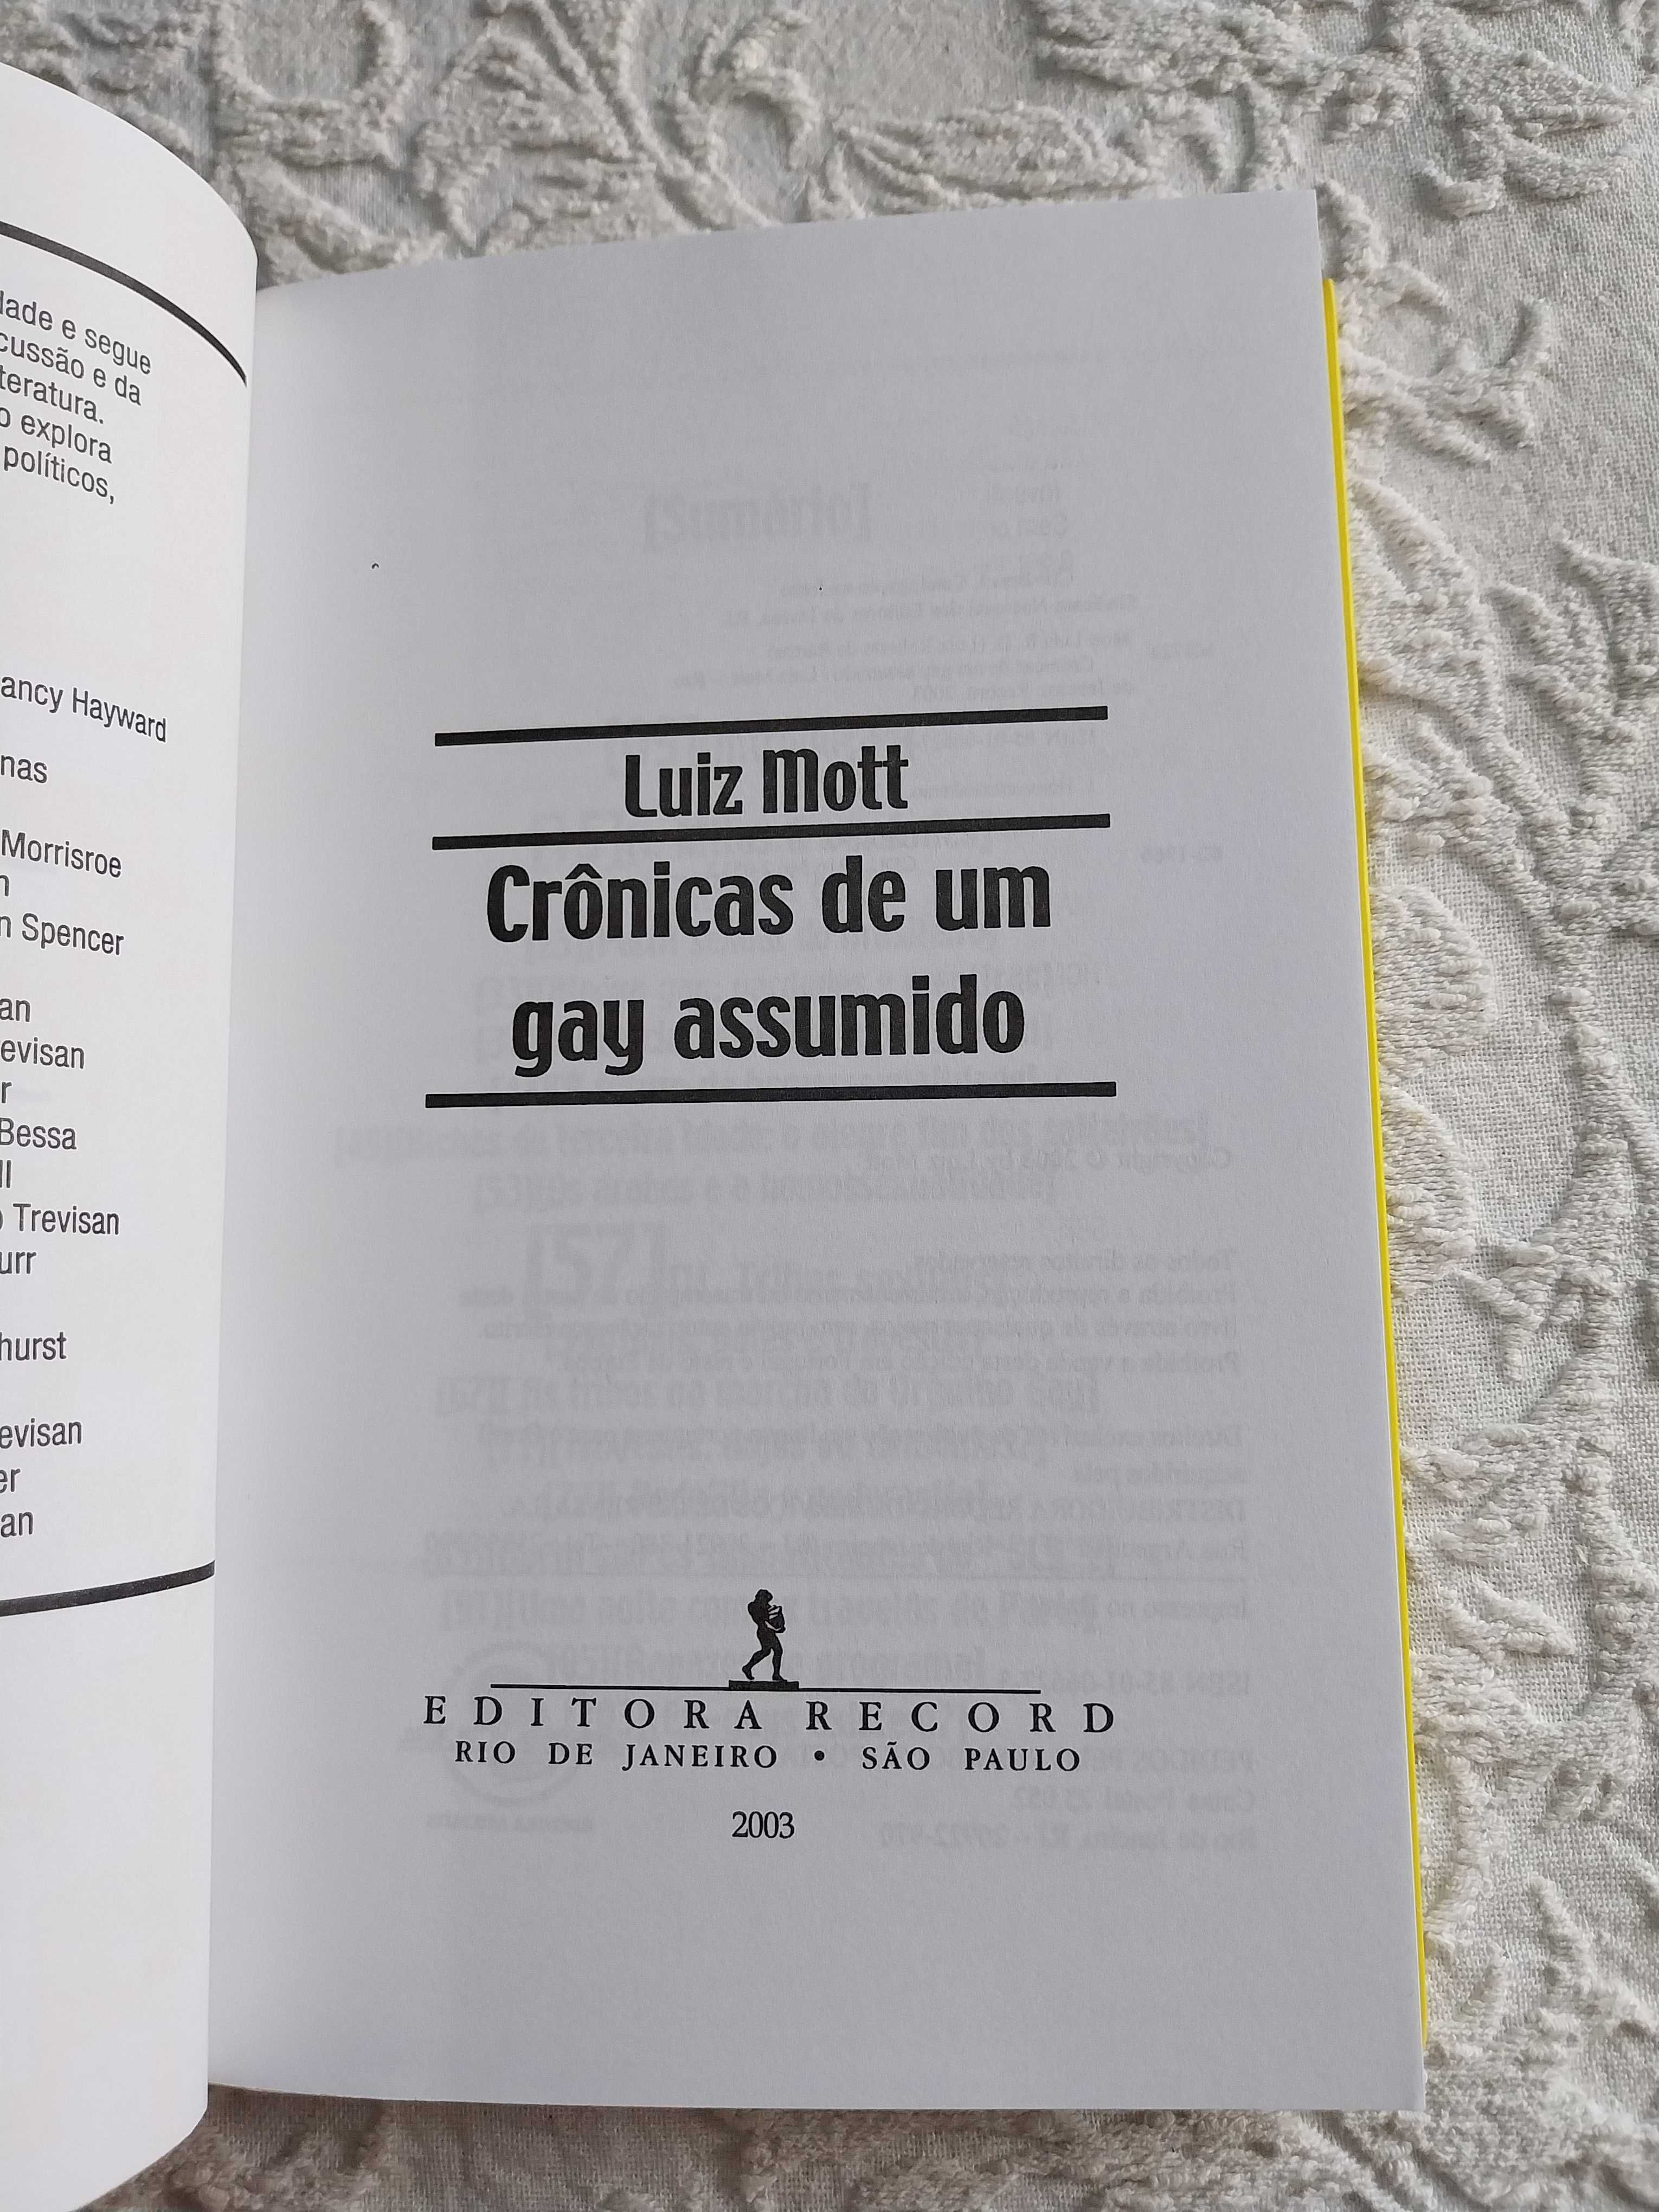 "Crónicas de um gay assumido", de Luiz Mott